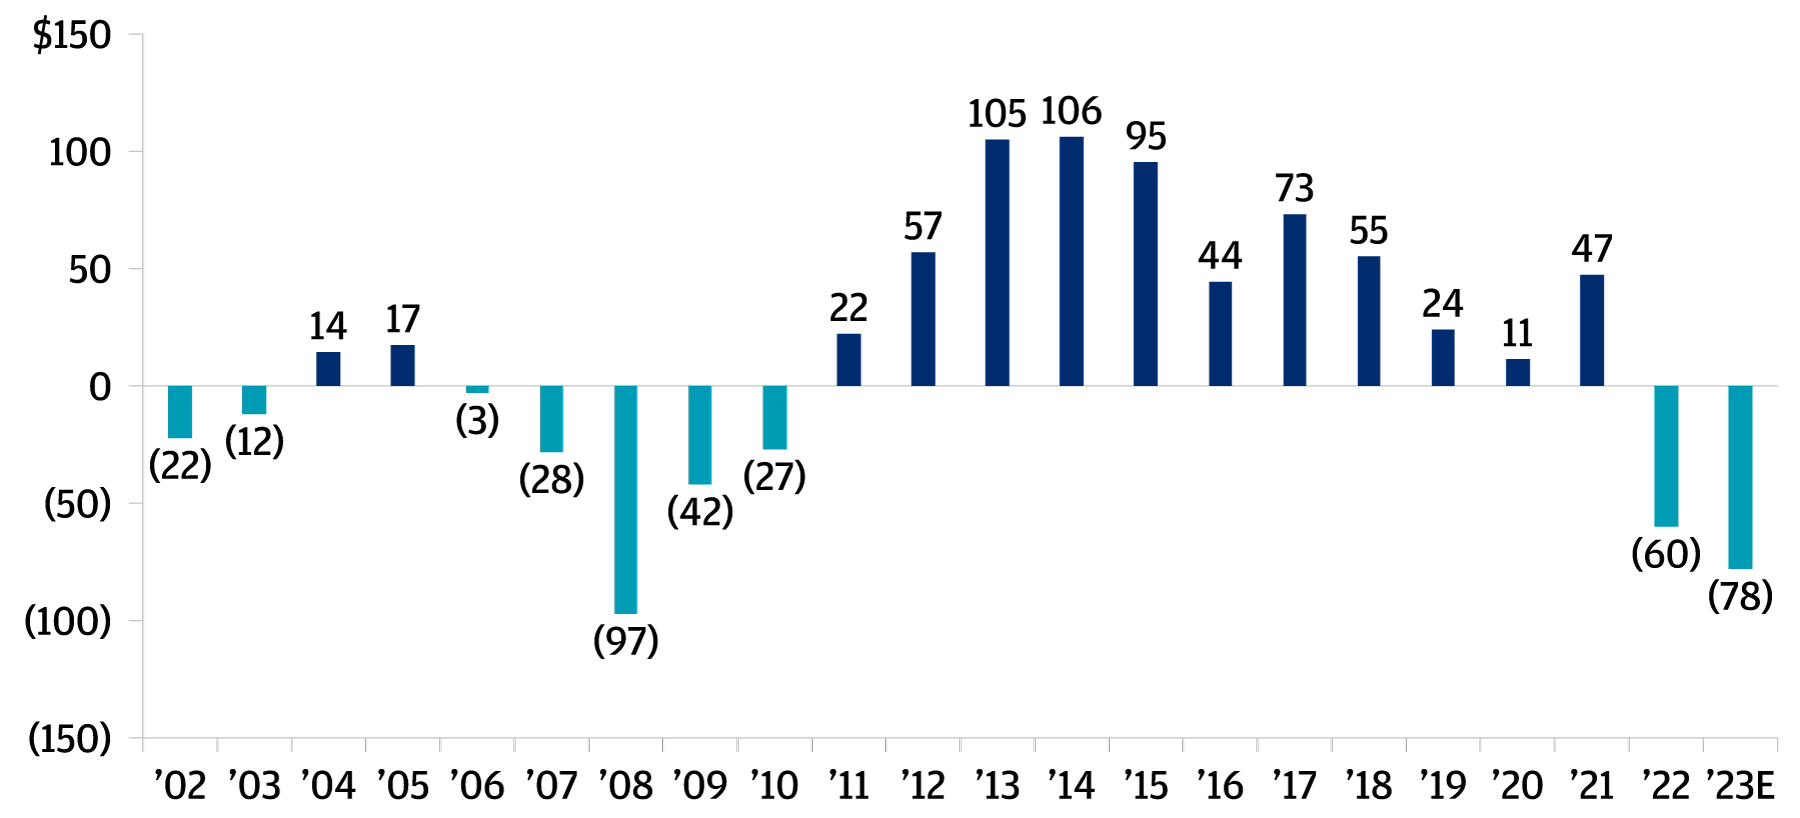 Gráfico de barras que muestra los flujos de caja netos de los socios limitados durante el curso de 2022 y 2023, y que, por primera vez desde la crisis financiera global, mostrada entre 2006 y 2010, los flujos de caja de los socios limitados han pasado a ser negativos en 2022 y 2023.